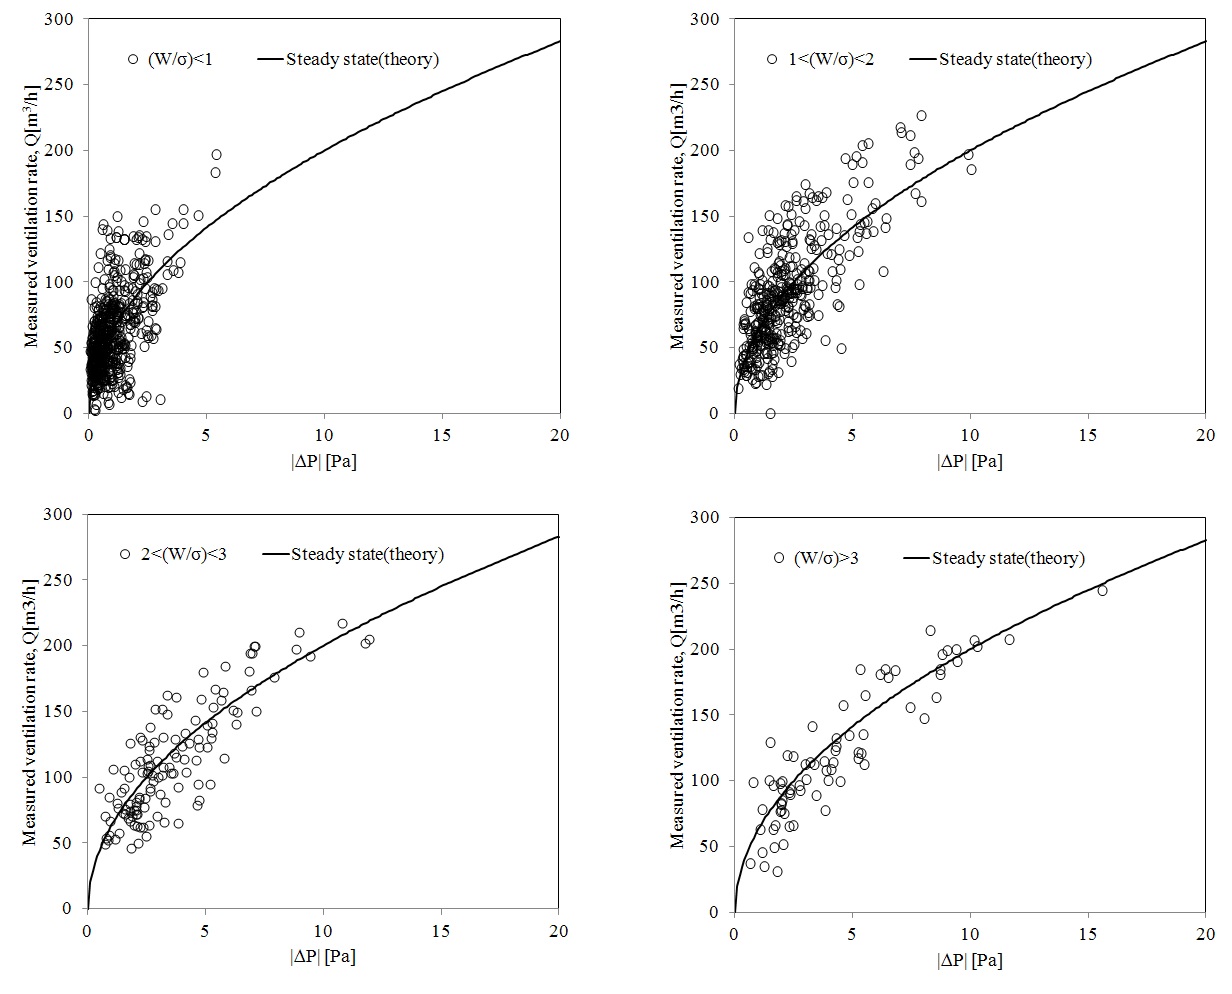 Fig. 3-22 비주기적 변동(W/σ)과 예측값과 실측값의 관계